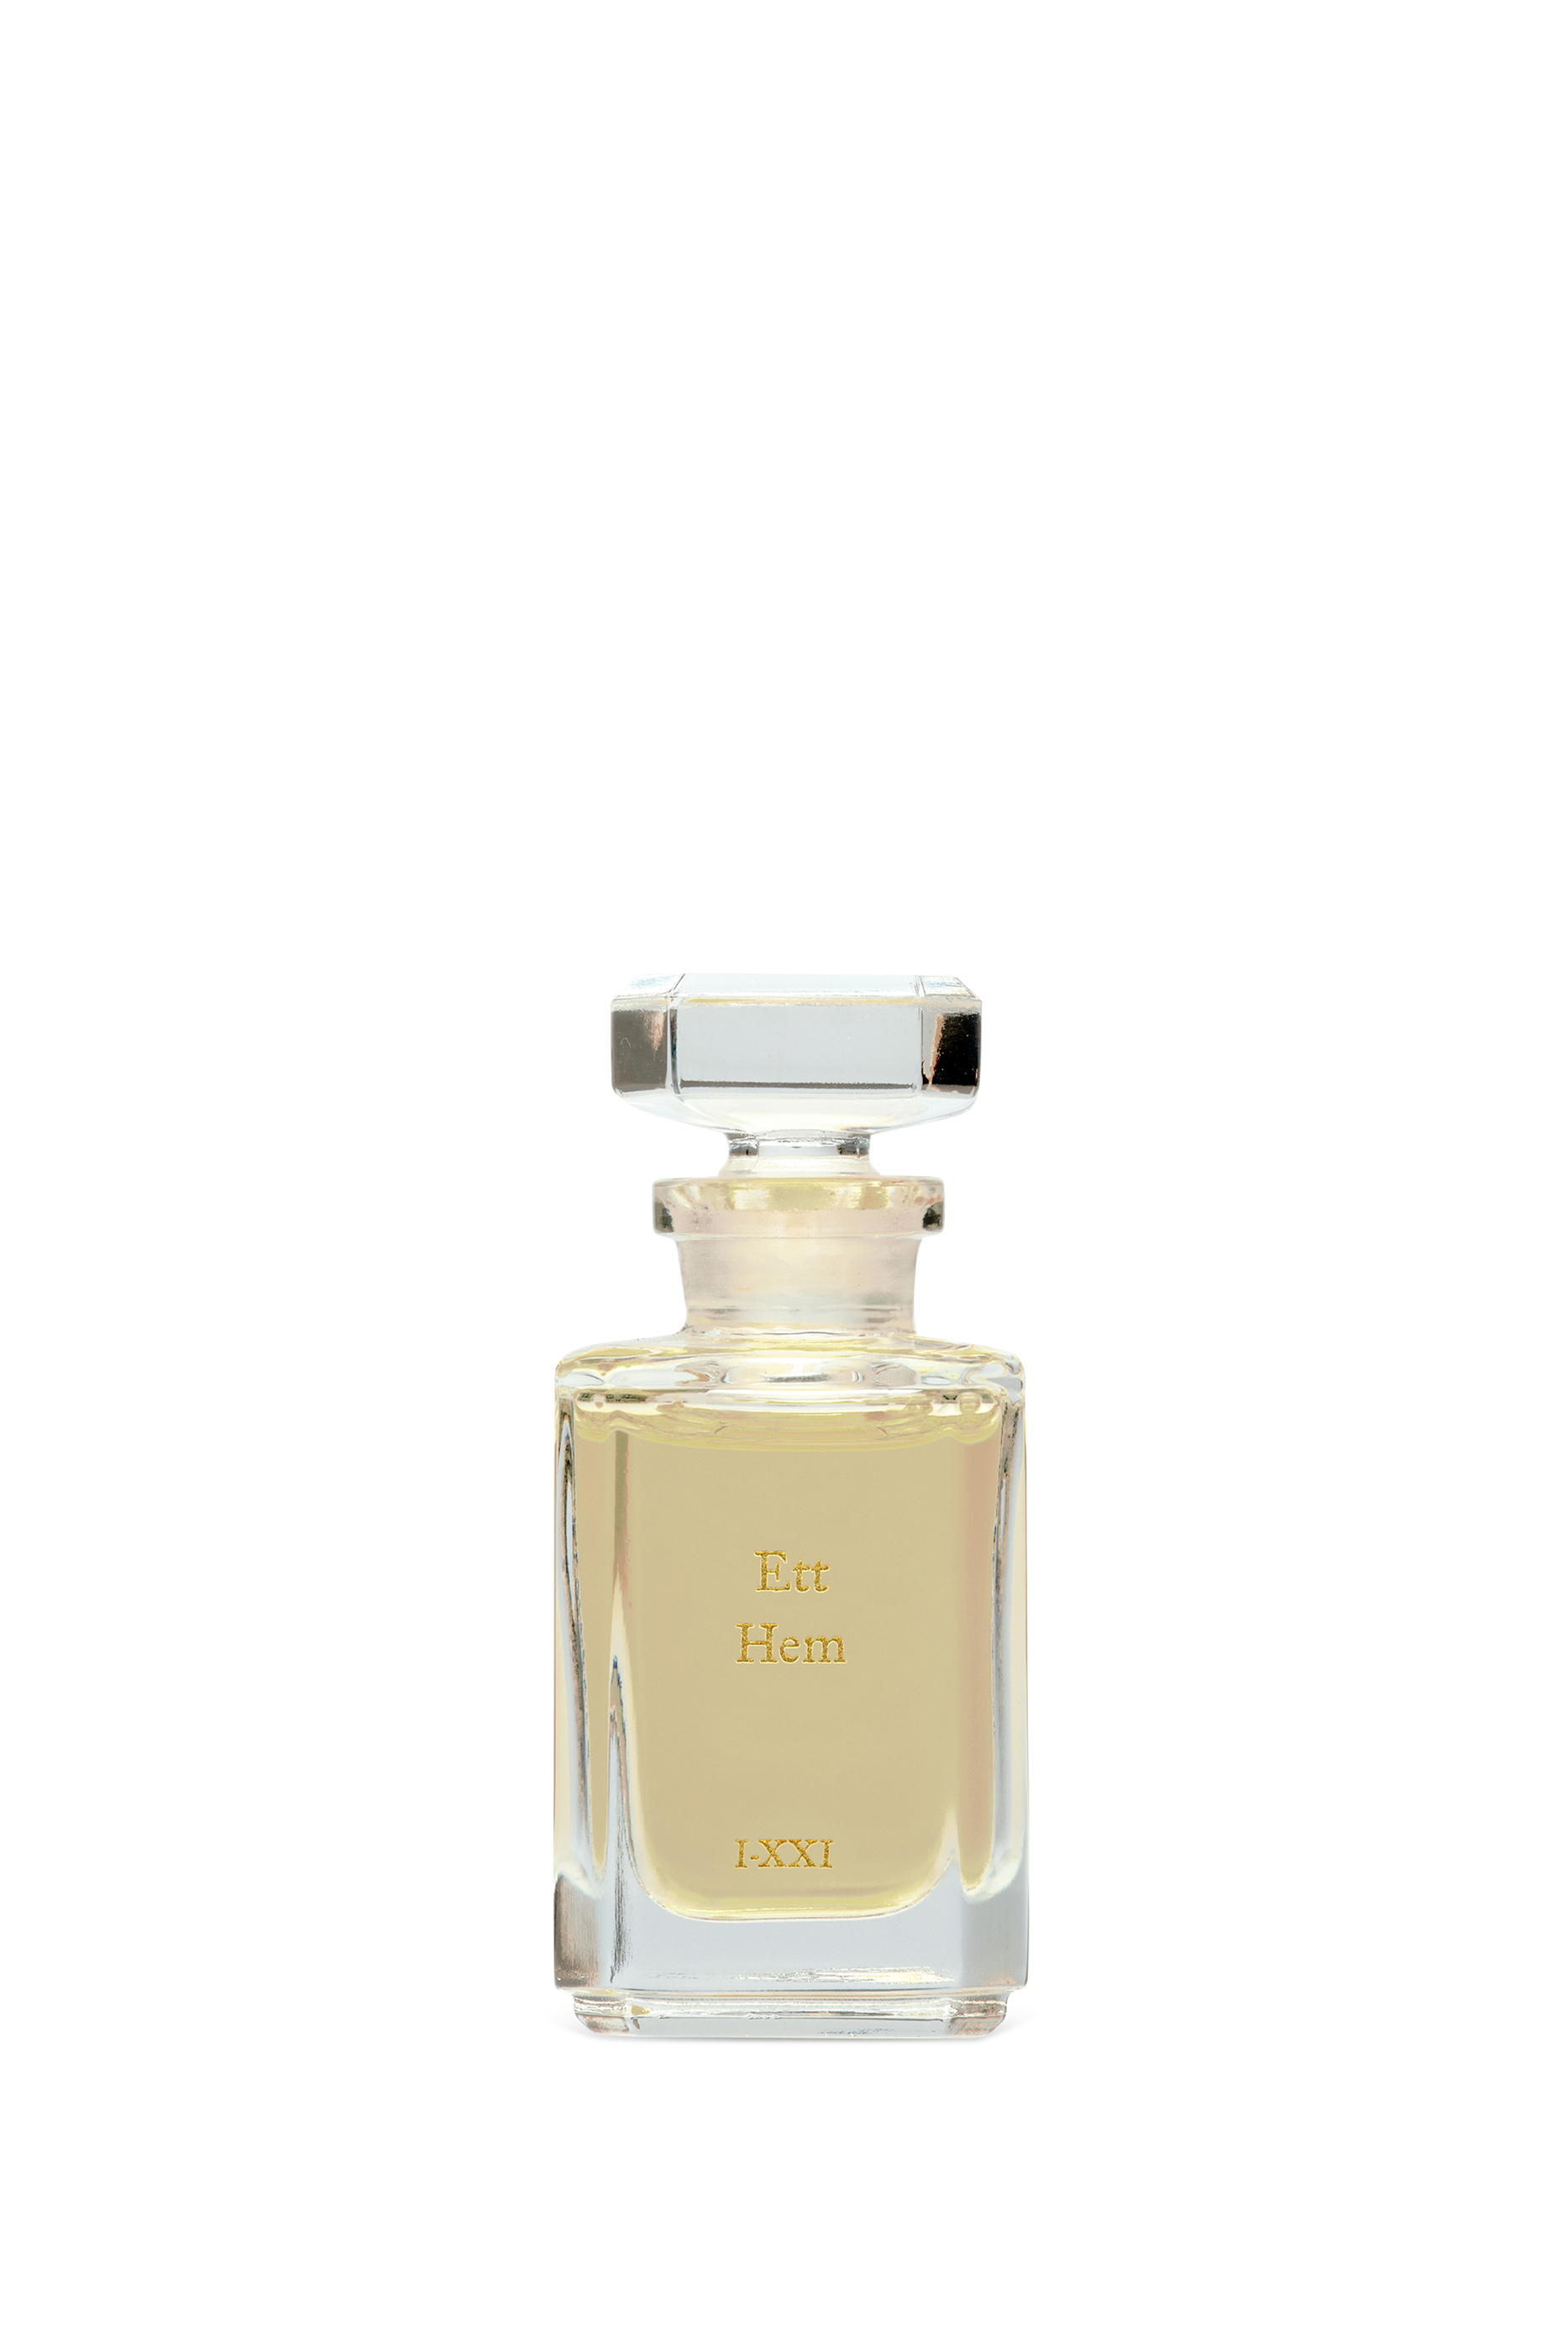 Buy Fueguia 1833 Ett Hem Perfume Oil for Unisex | Bloomingdale's UAE